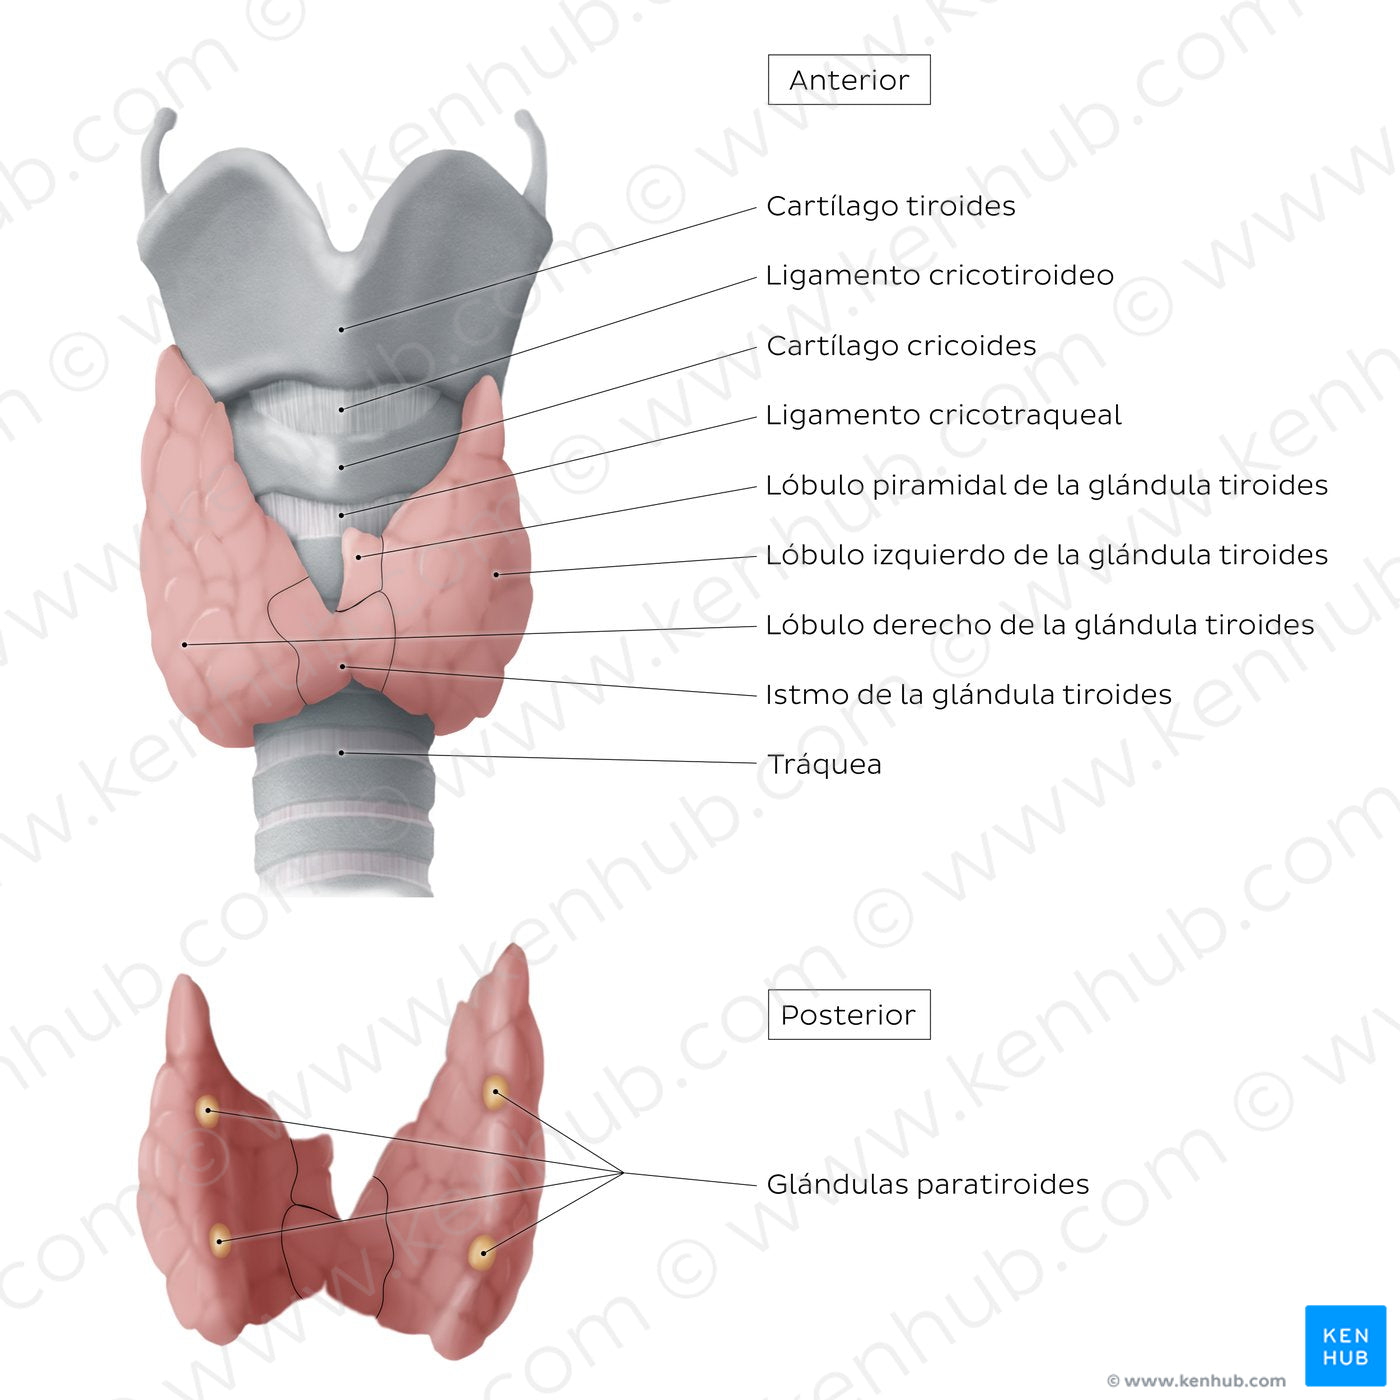 Thyroid and parathyroid glands (Spanish)